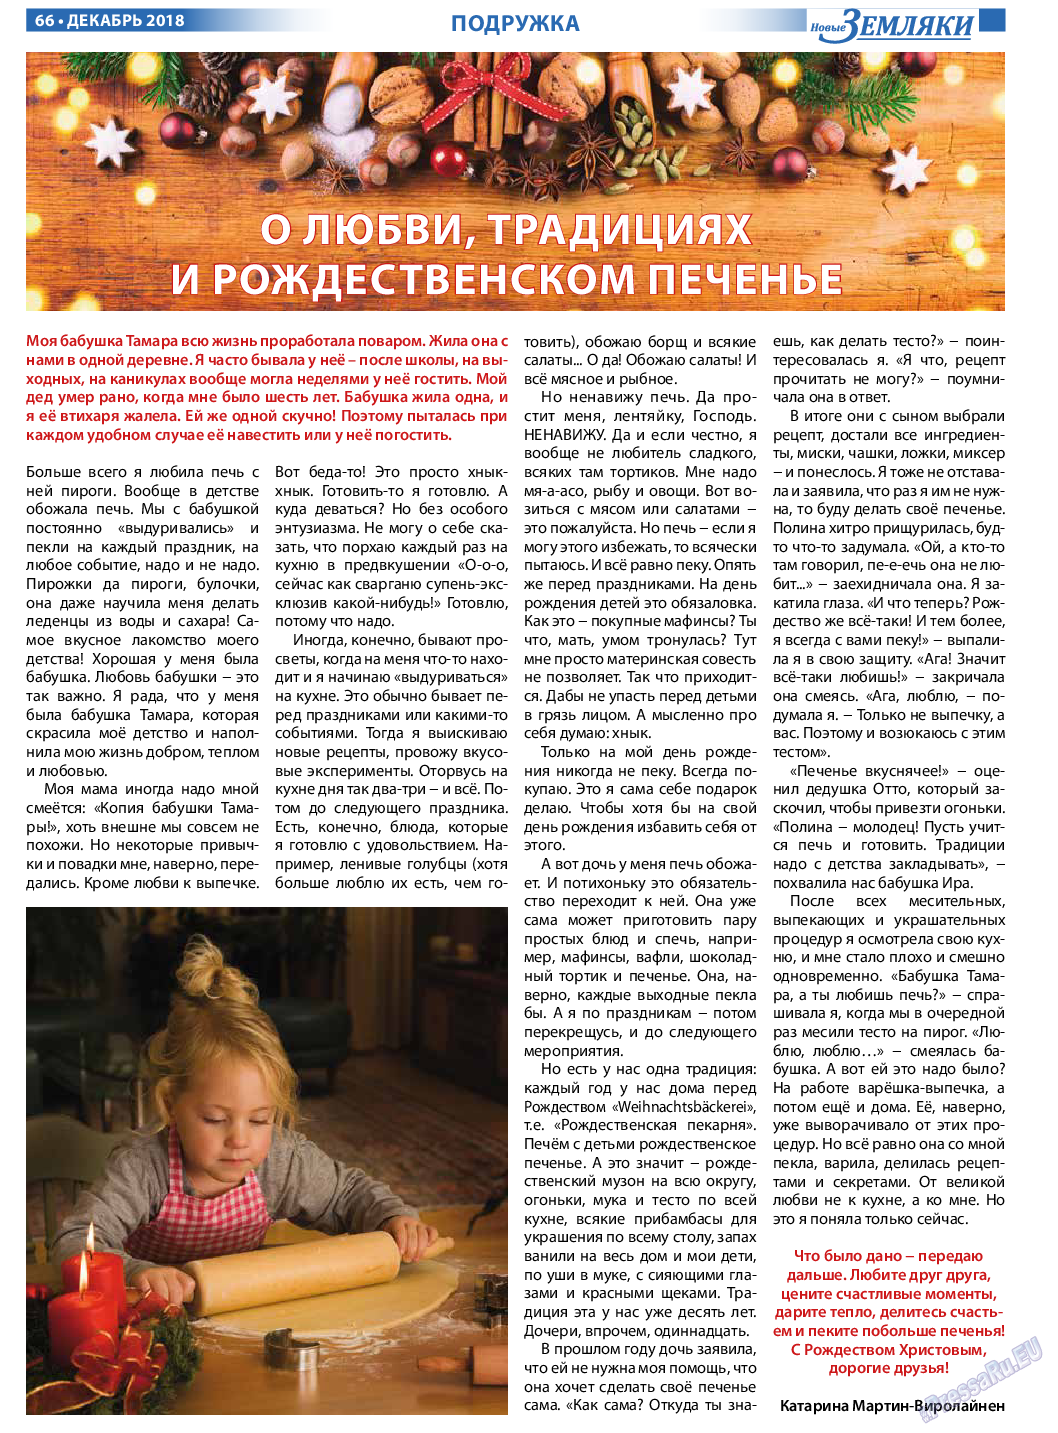 Новые Земляки, газета. 2018 №12 стр.66